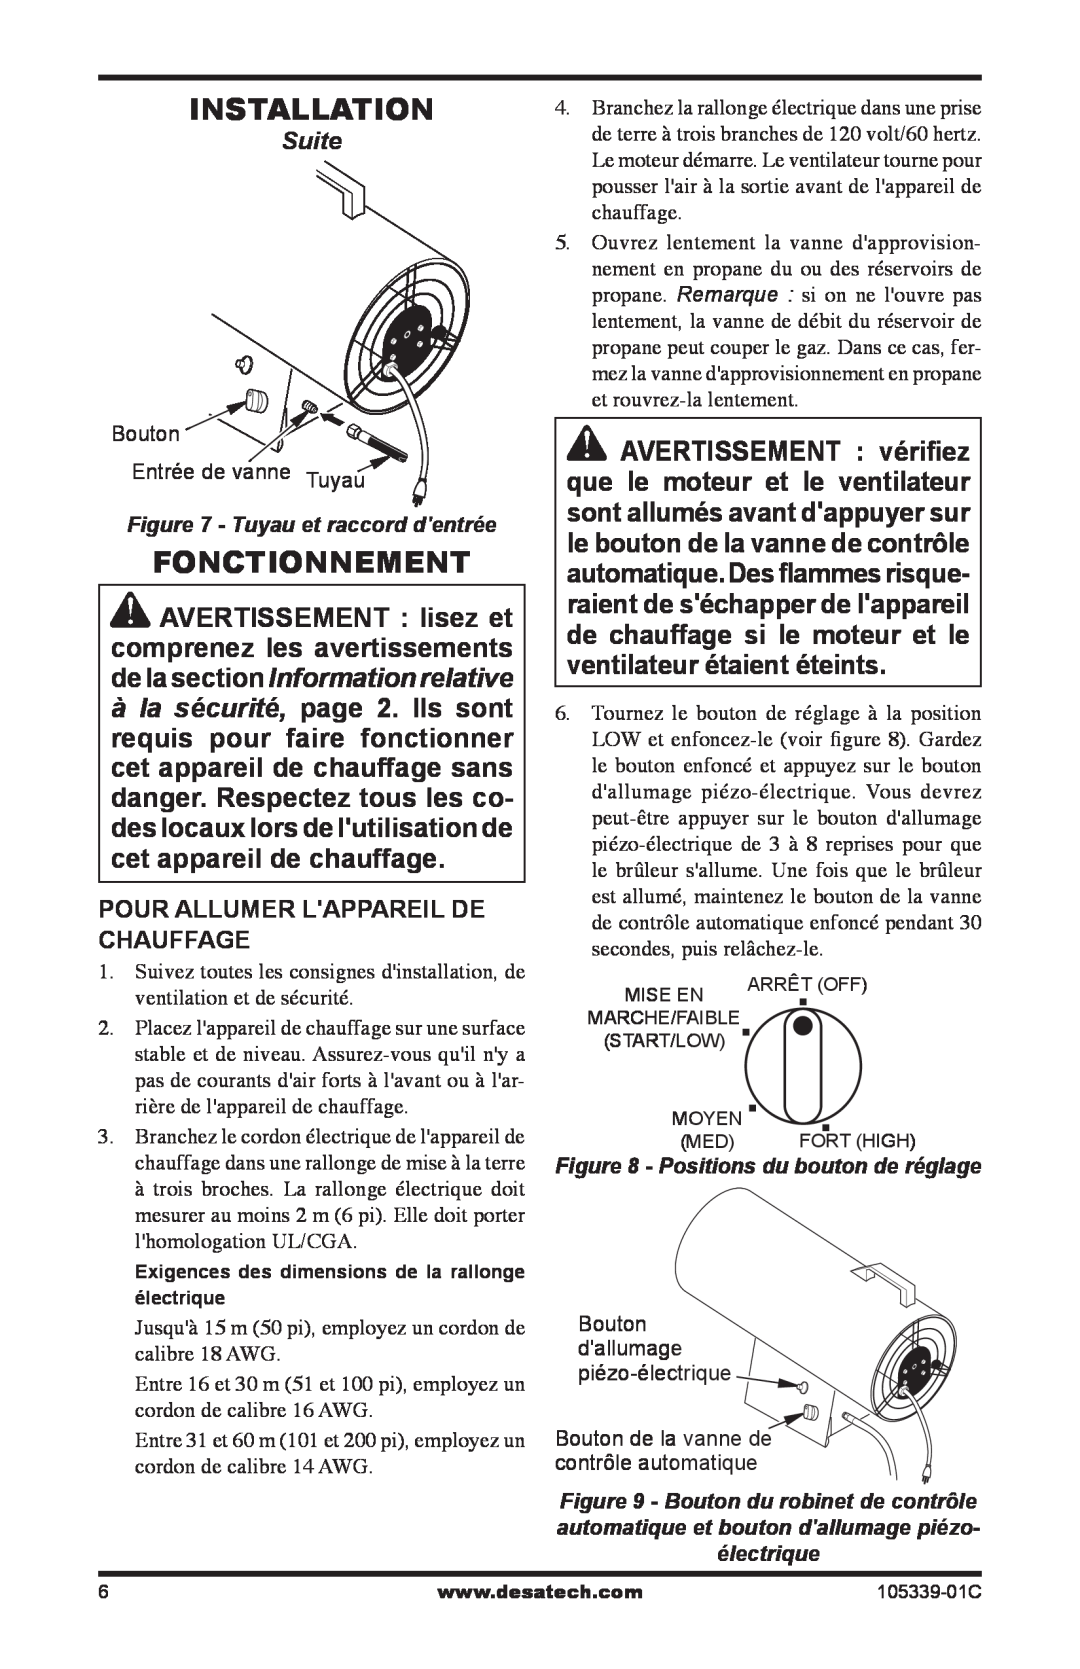 Desa RCLP50-F owner manual Installation, Fonctionnement, Suite, Pour Allumer Lappareil De Chauffage 